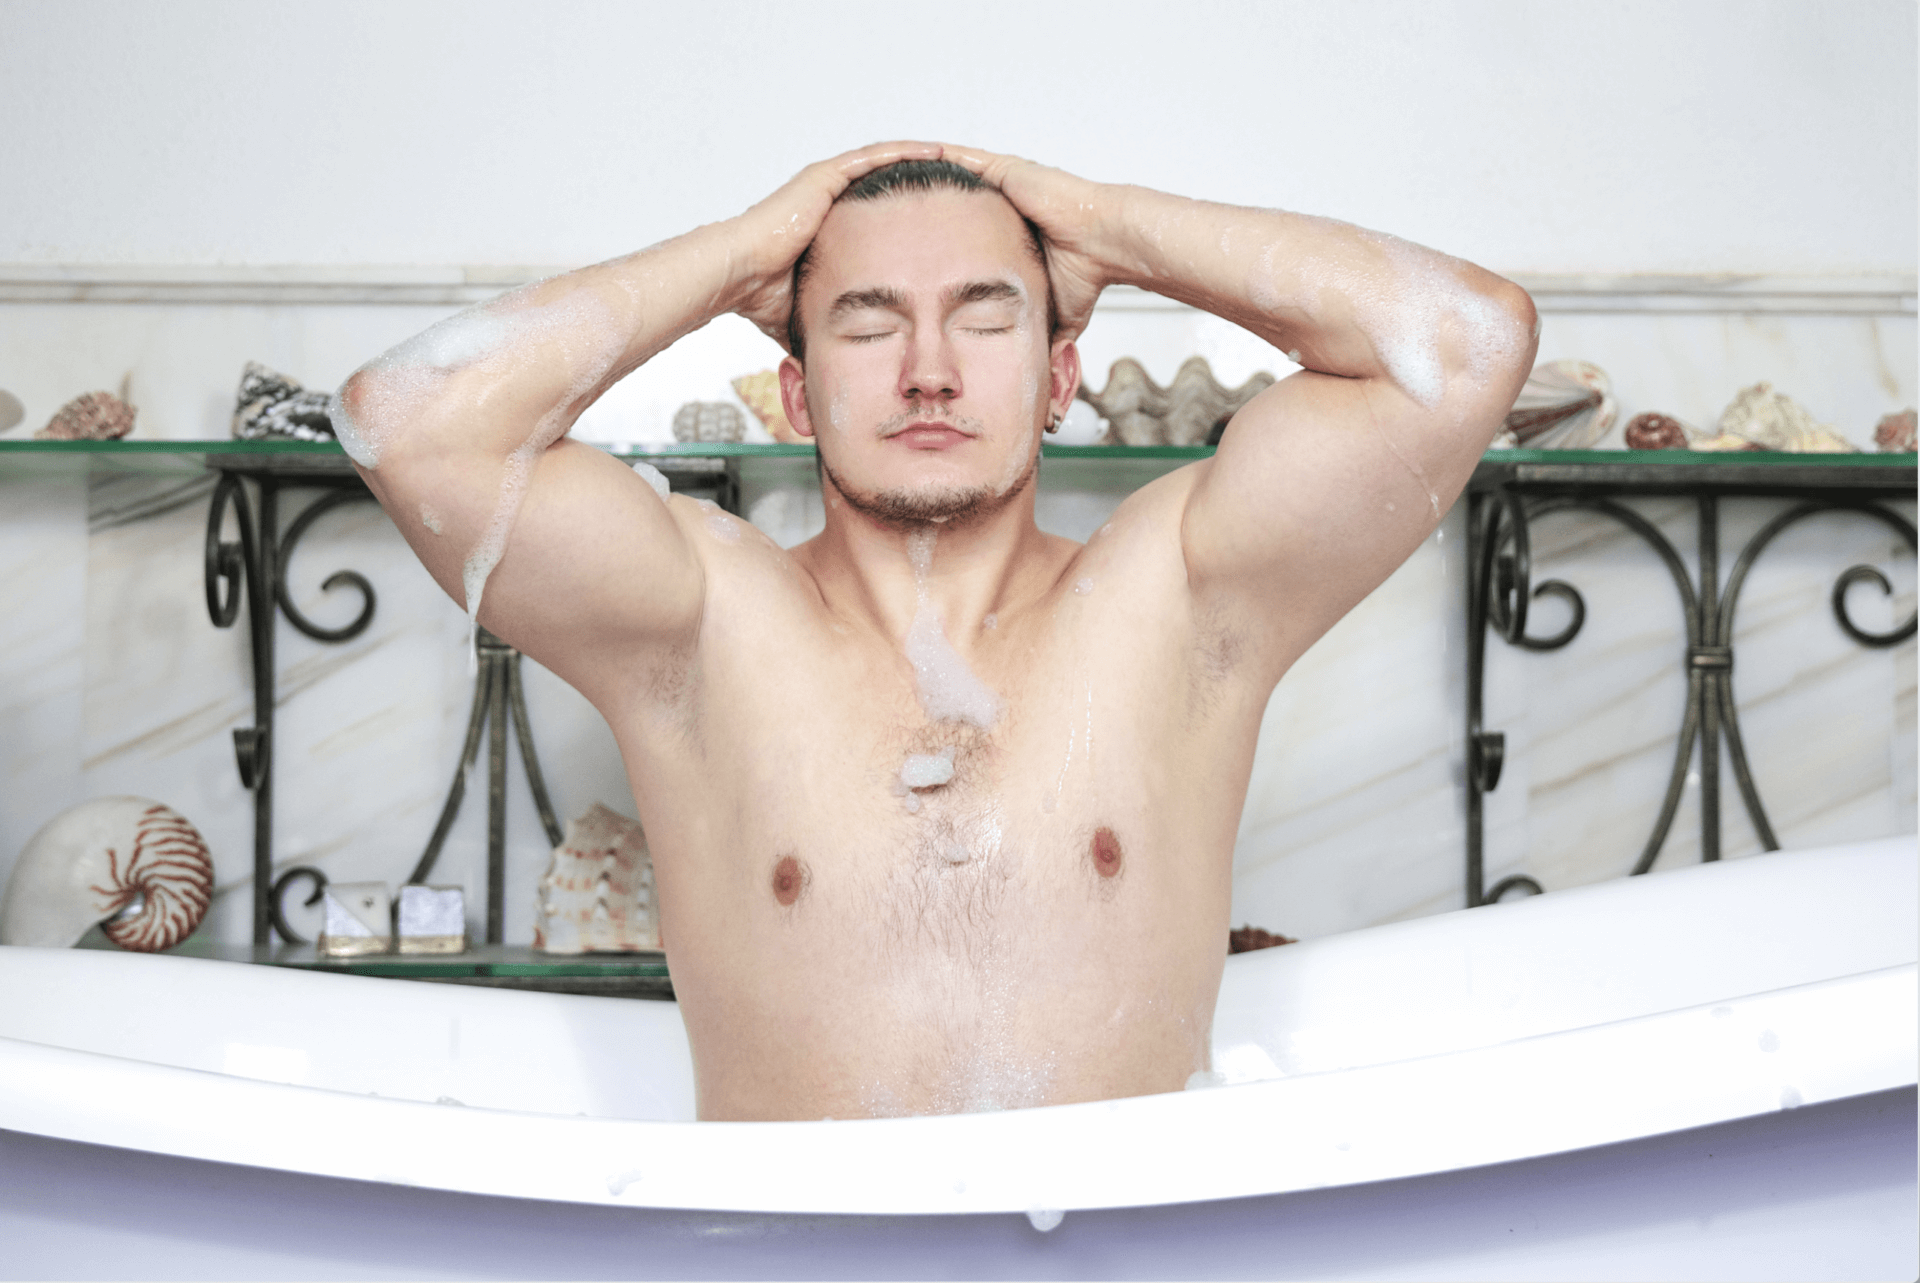 Man washing his hair while taking a bubble bath